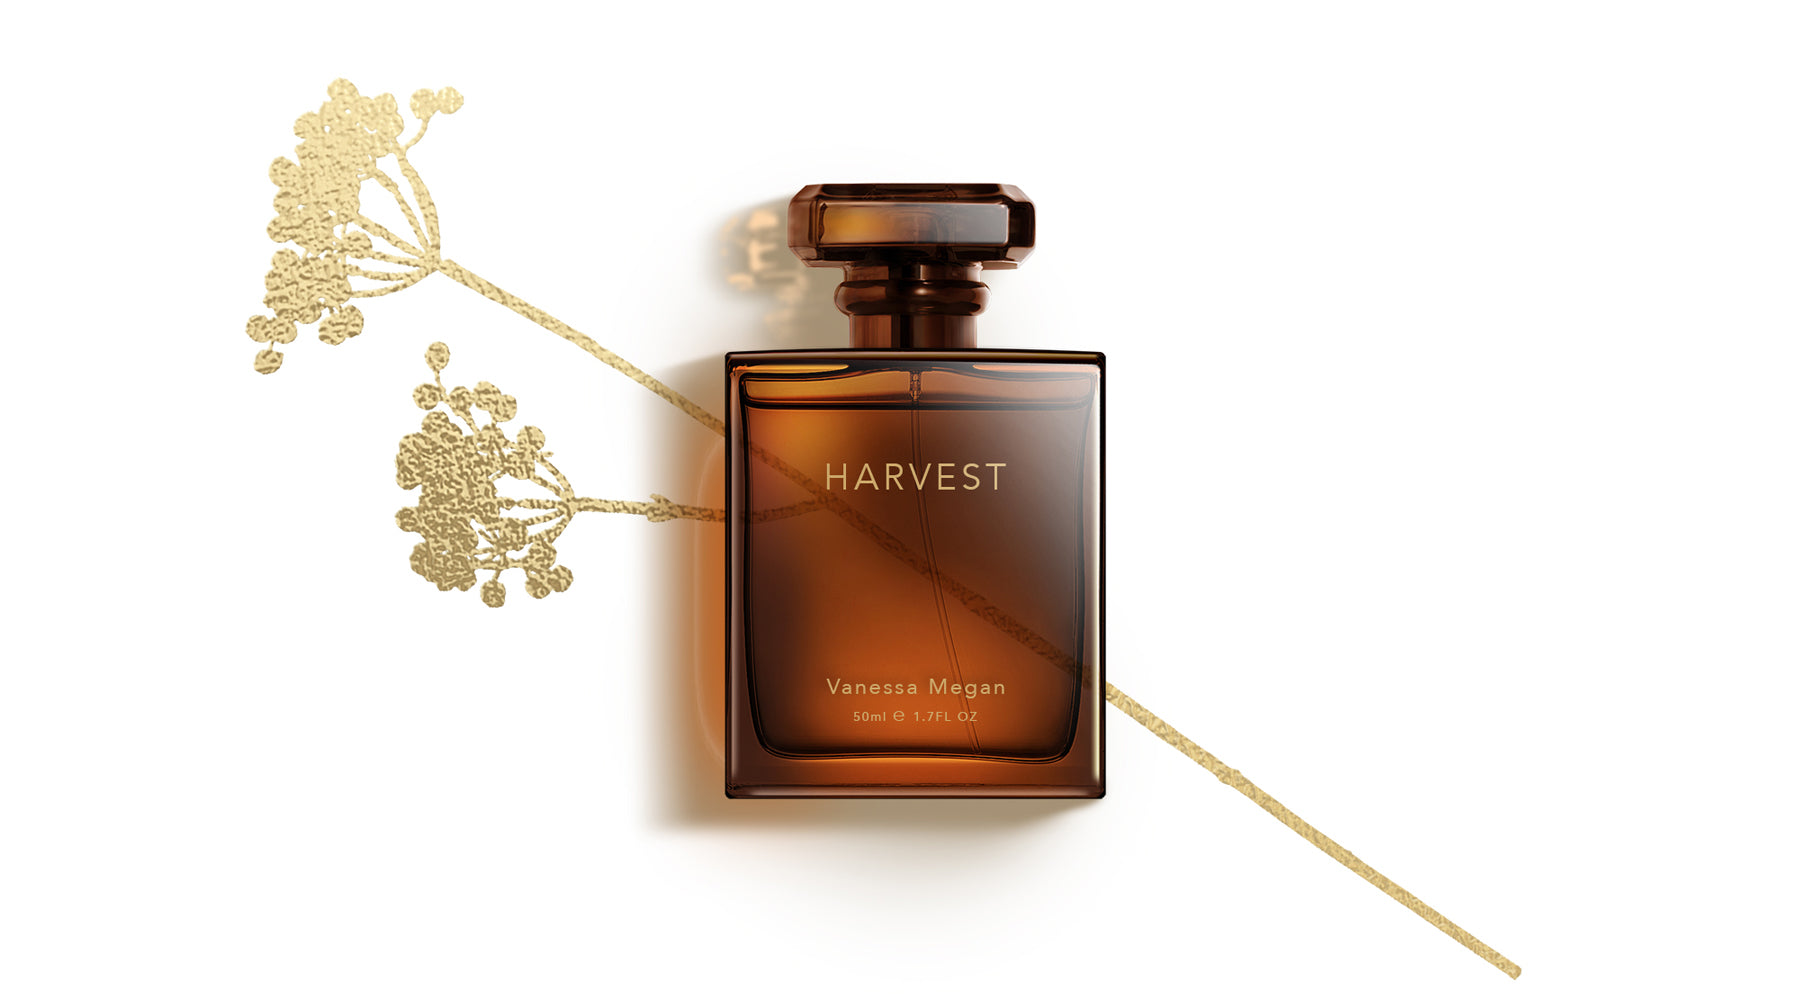 Harvest The Best Natural Perfume winner